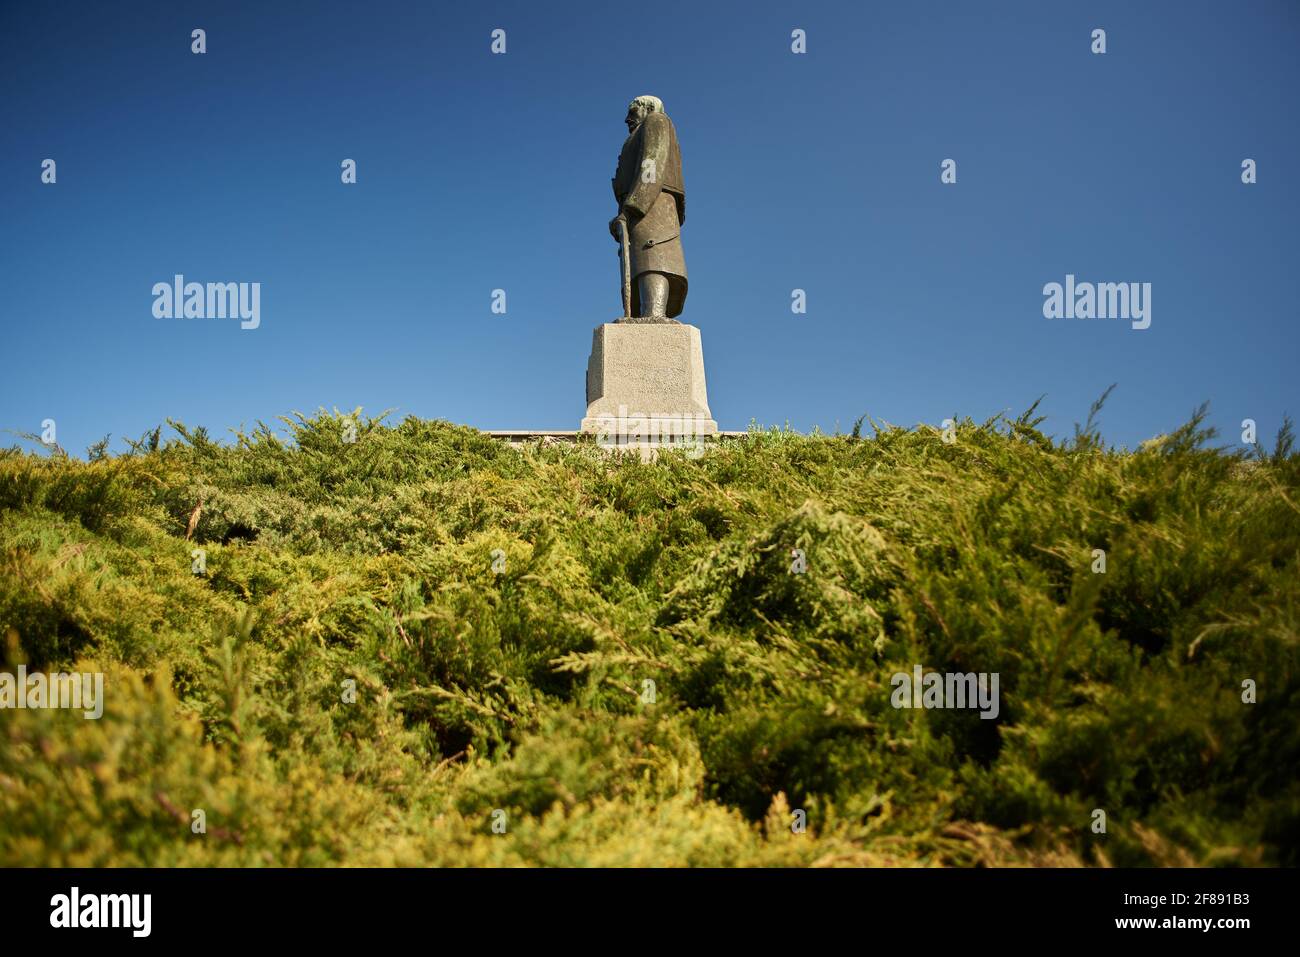 Monumento dedicato a Karadjordje, leader della i rivolta serba (1804-1813) a Belgrado, Serbia il 10 aprile 2021 Foto Stock